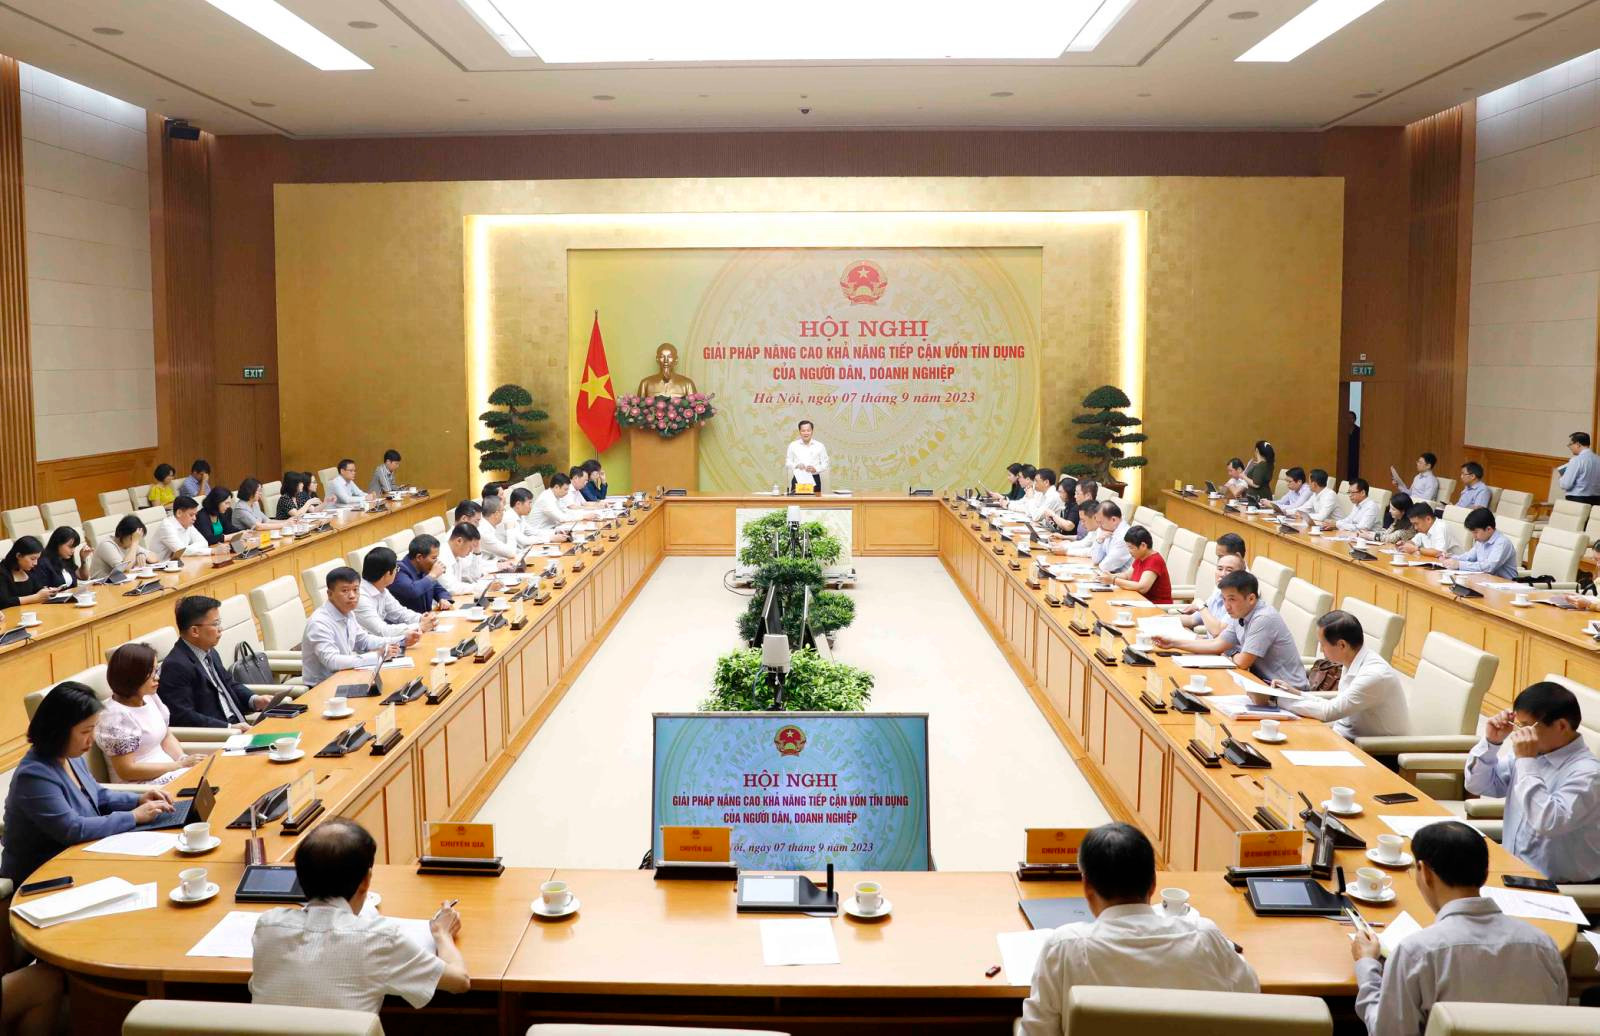 Phó Thủ tướng Lê Minh Khái chủ trì họp bàn giải pháp nâng cao khả năng tiếp cận tín dụng của người dân, doanh nghiệp - Ảnh 3.